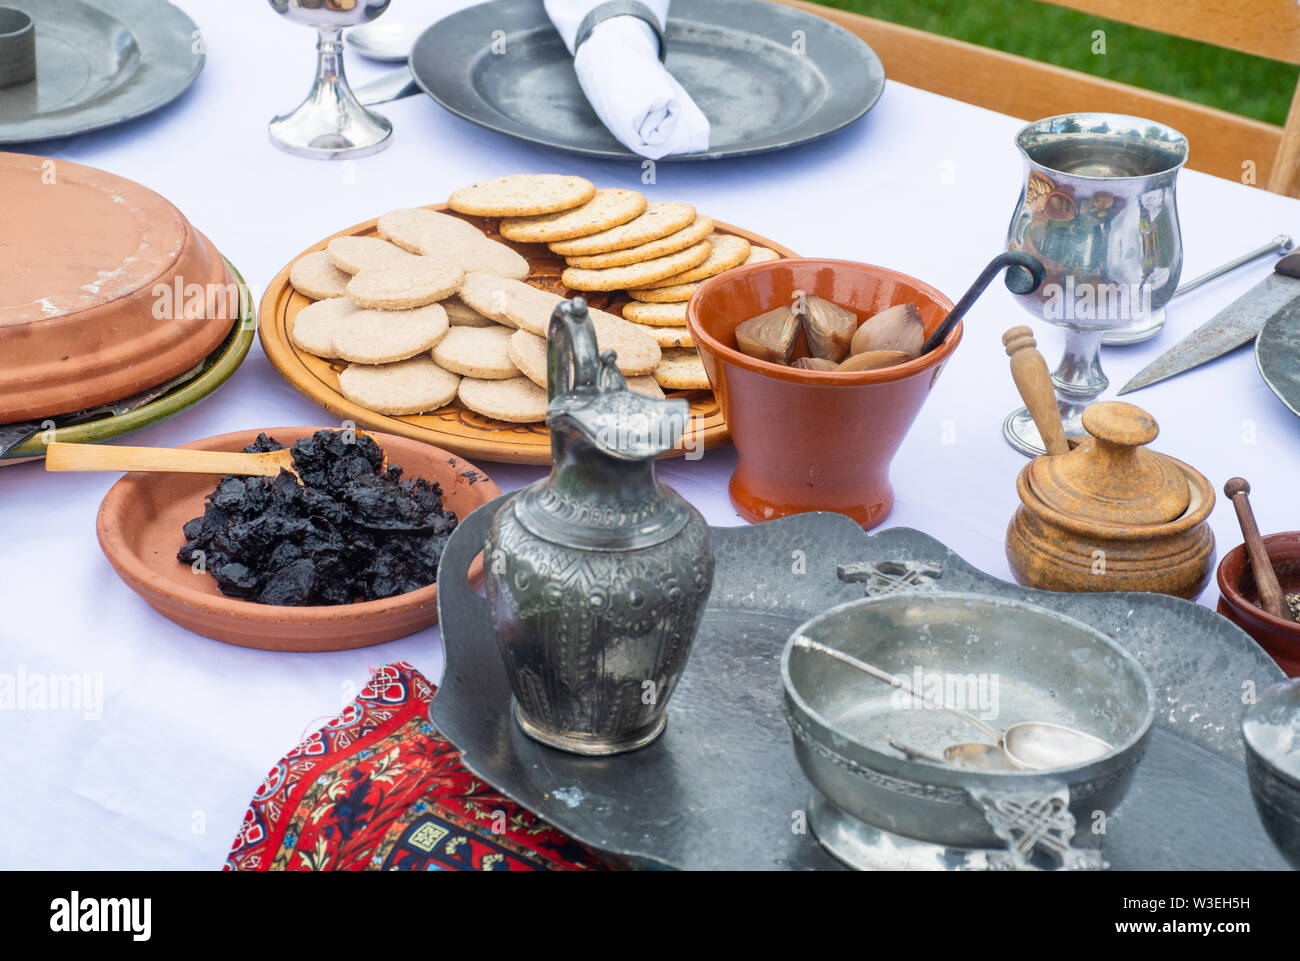 Typische mittelalterliche Speisen Tabelle mit Gebäck Obst und Essiggurke Stockfoto